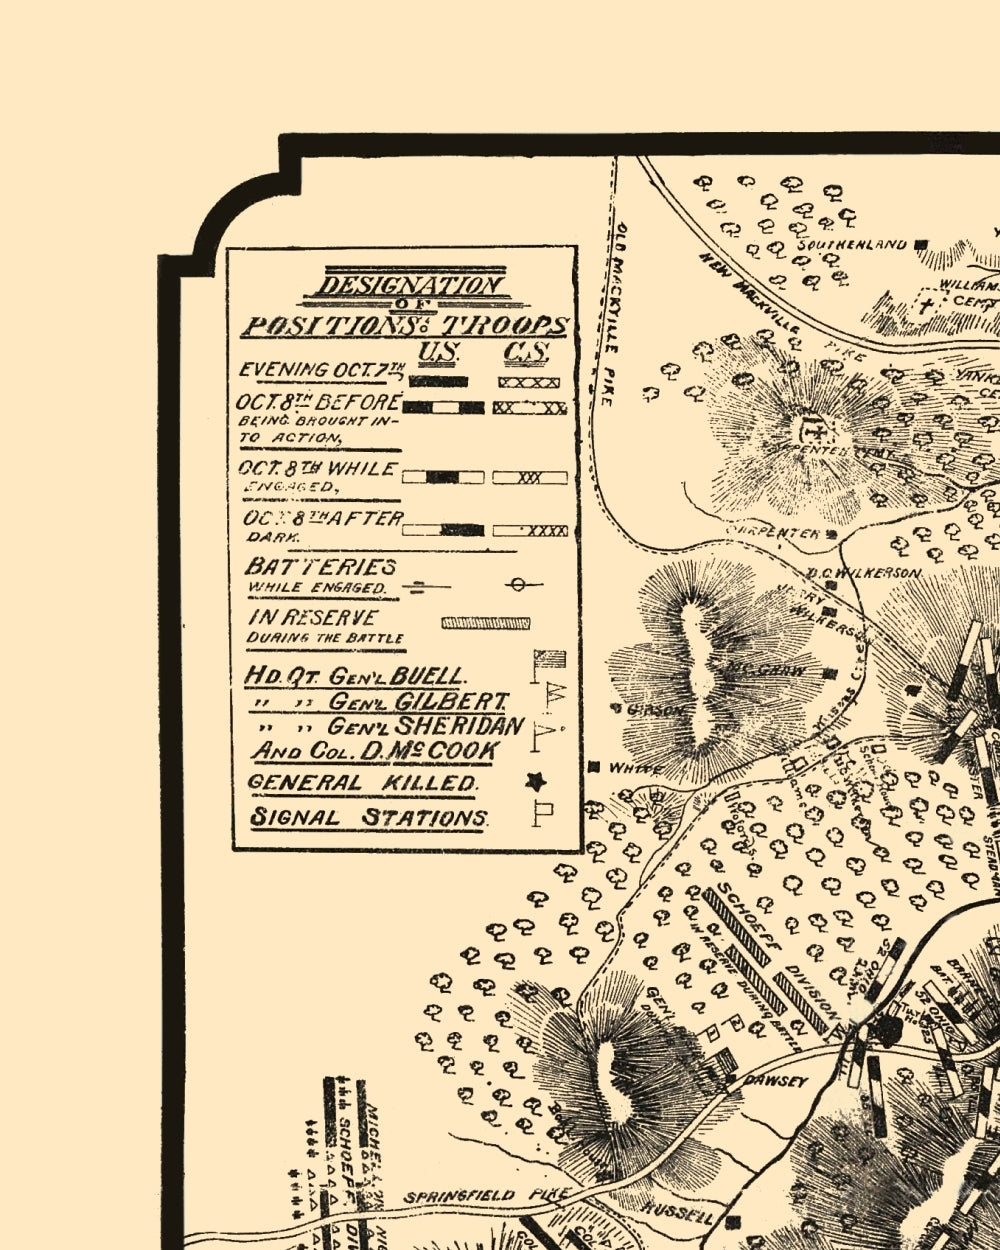 Historical Civil War Map - Perryville Kentucky Battlefield - Work 1882 - 23 x 28.76 - Vintage Wall Art